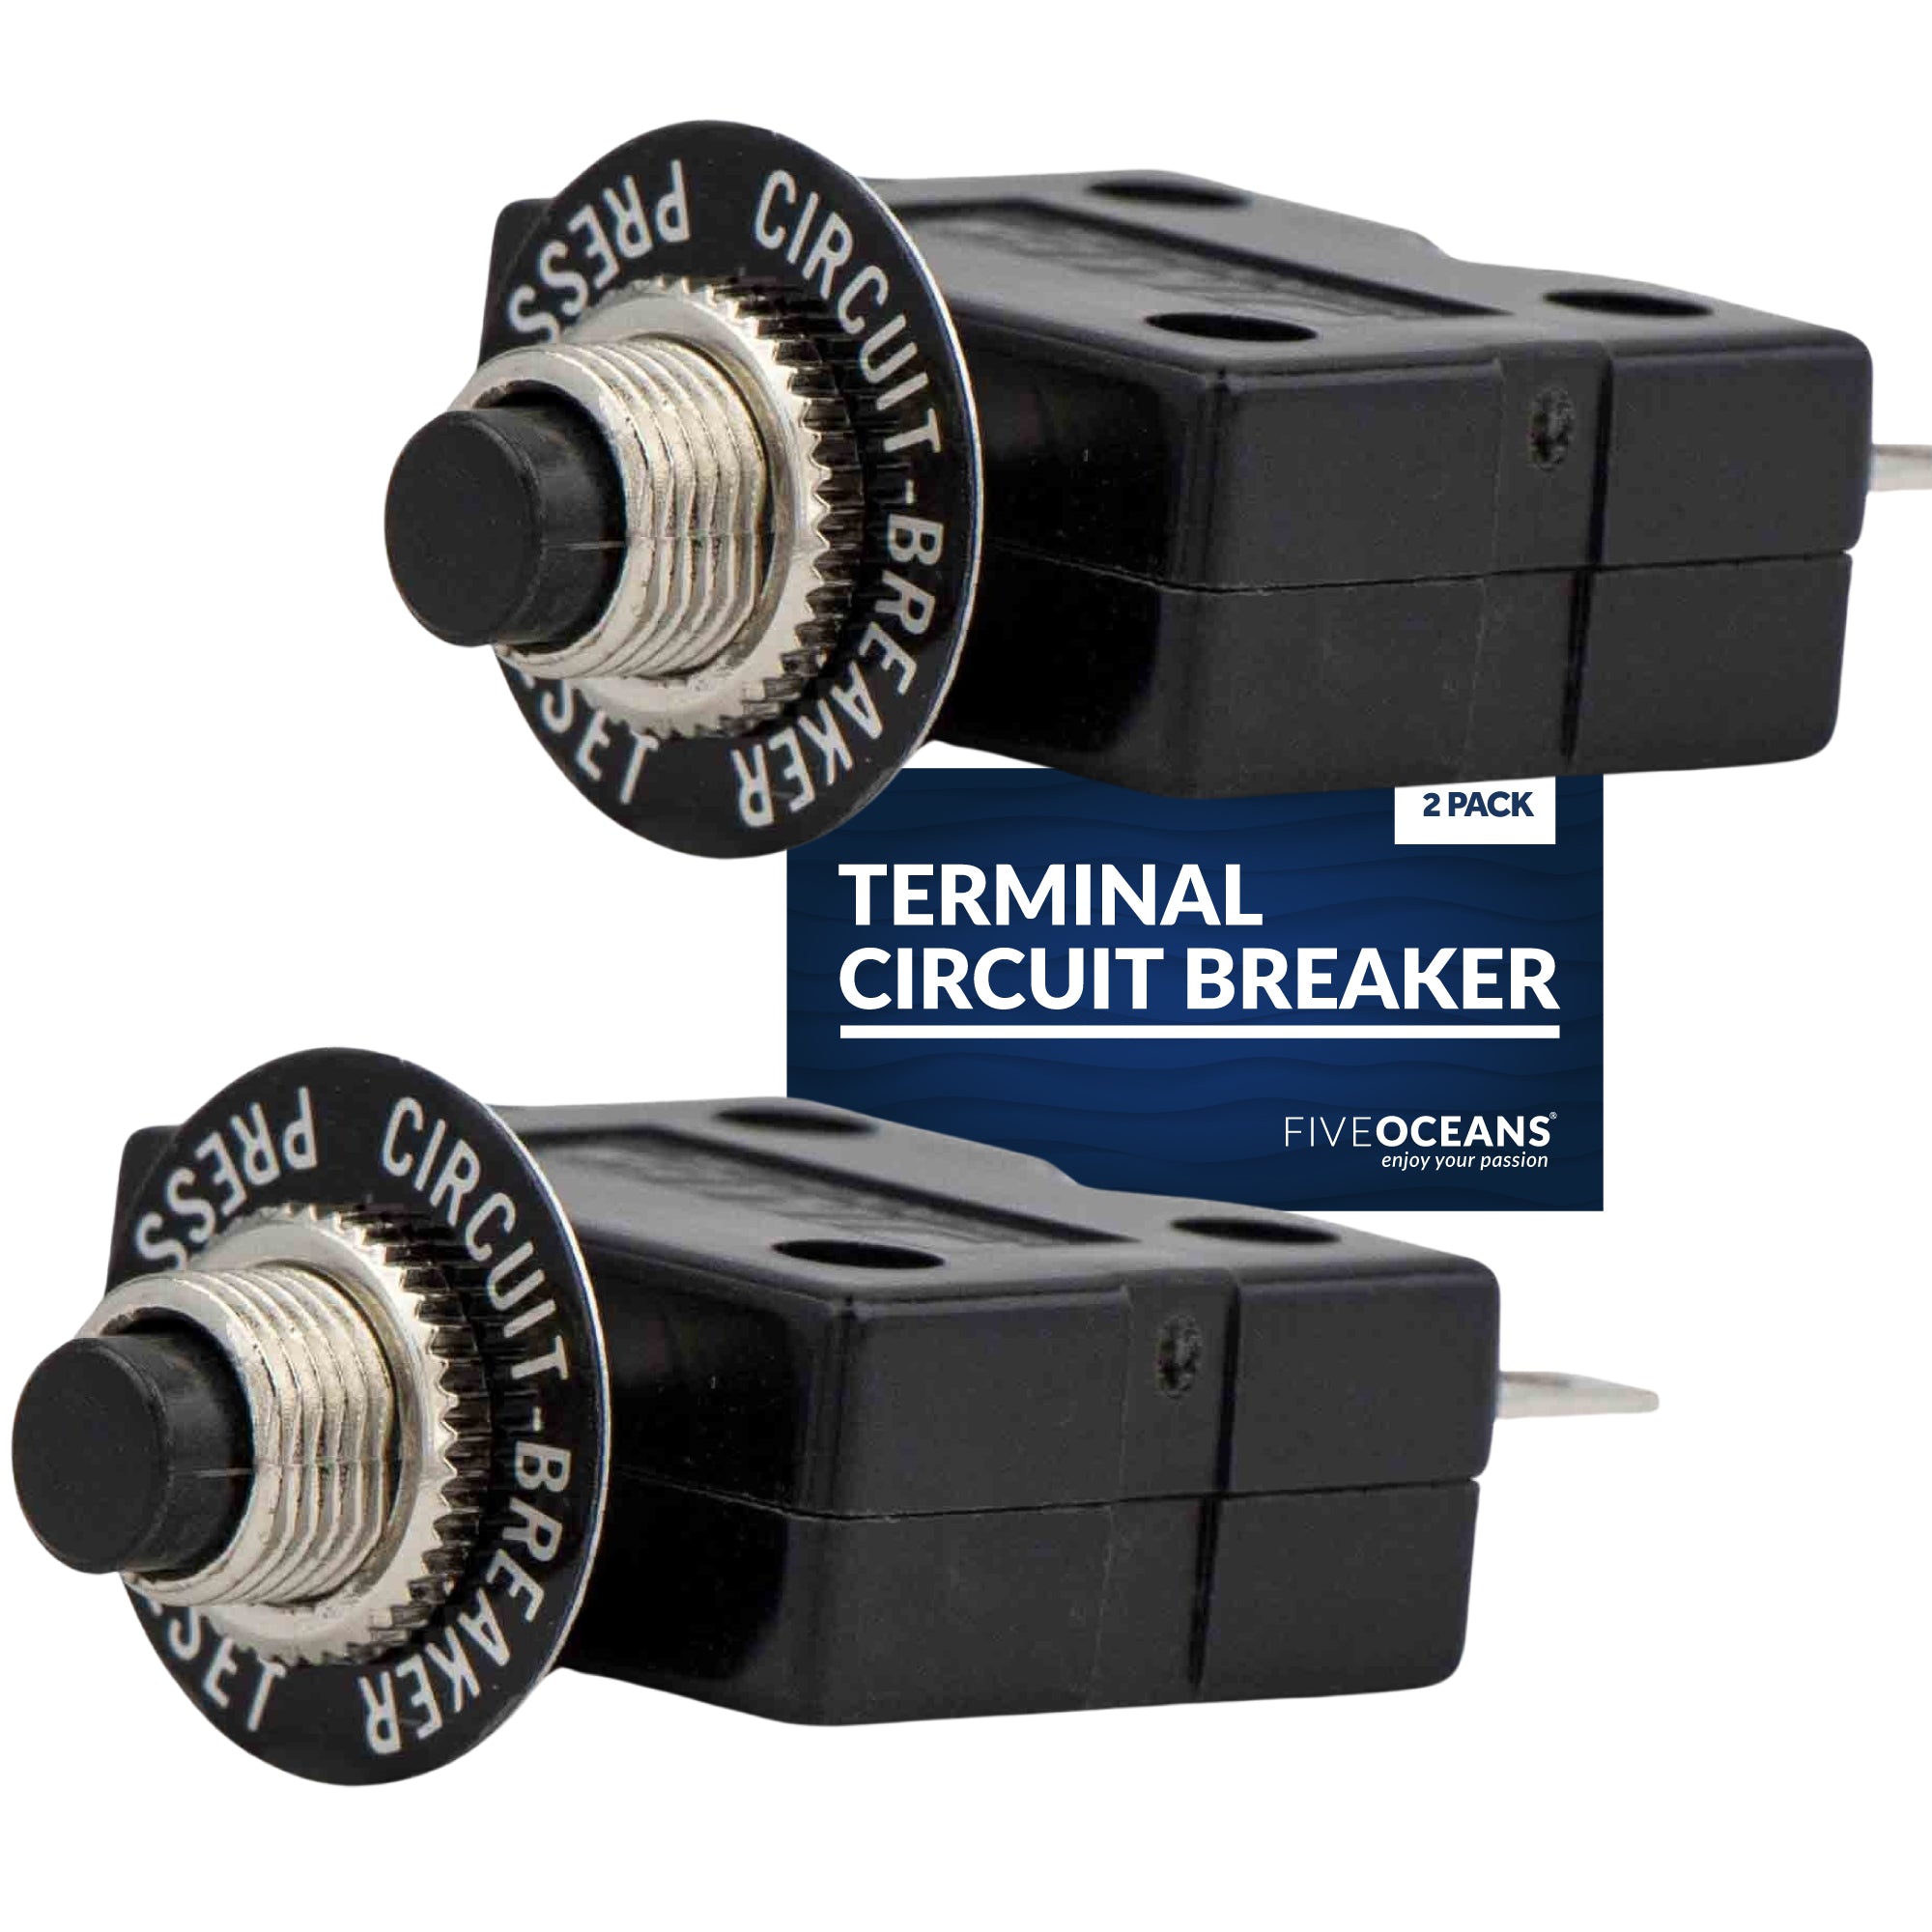 Terminal Circuit Breaker, 15 Amp 2-Pack - FO1432-M2